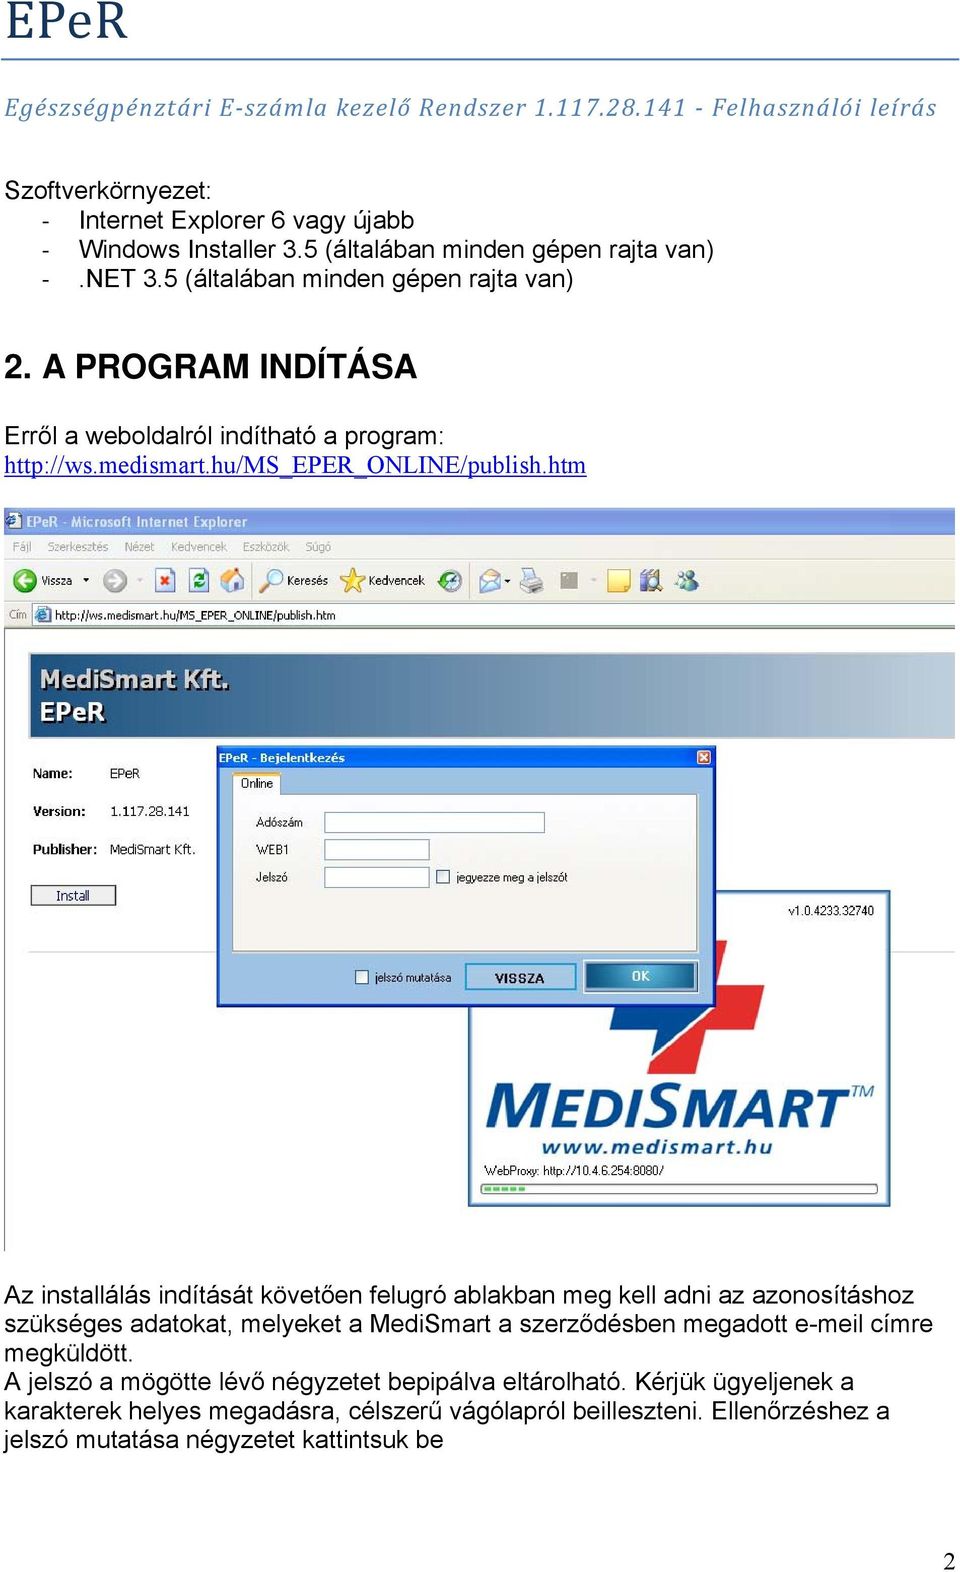 htm Az installálás indítását követően felugró ablakban meg kell adni az azonosításhoz szükséges adatokat, melyeket a MediSmart a szerződésben megadott e-meil